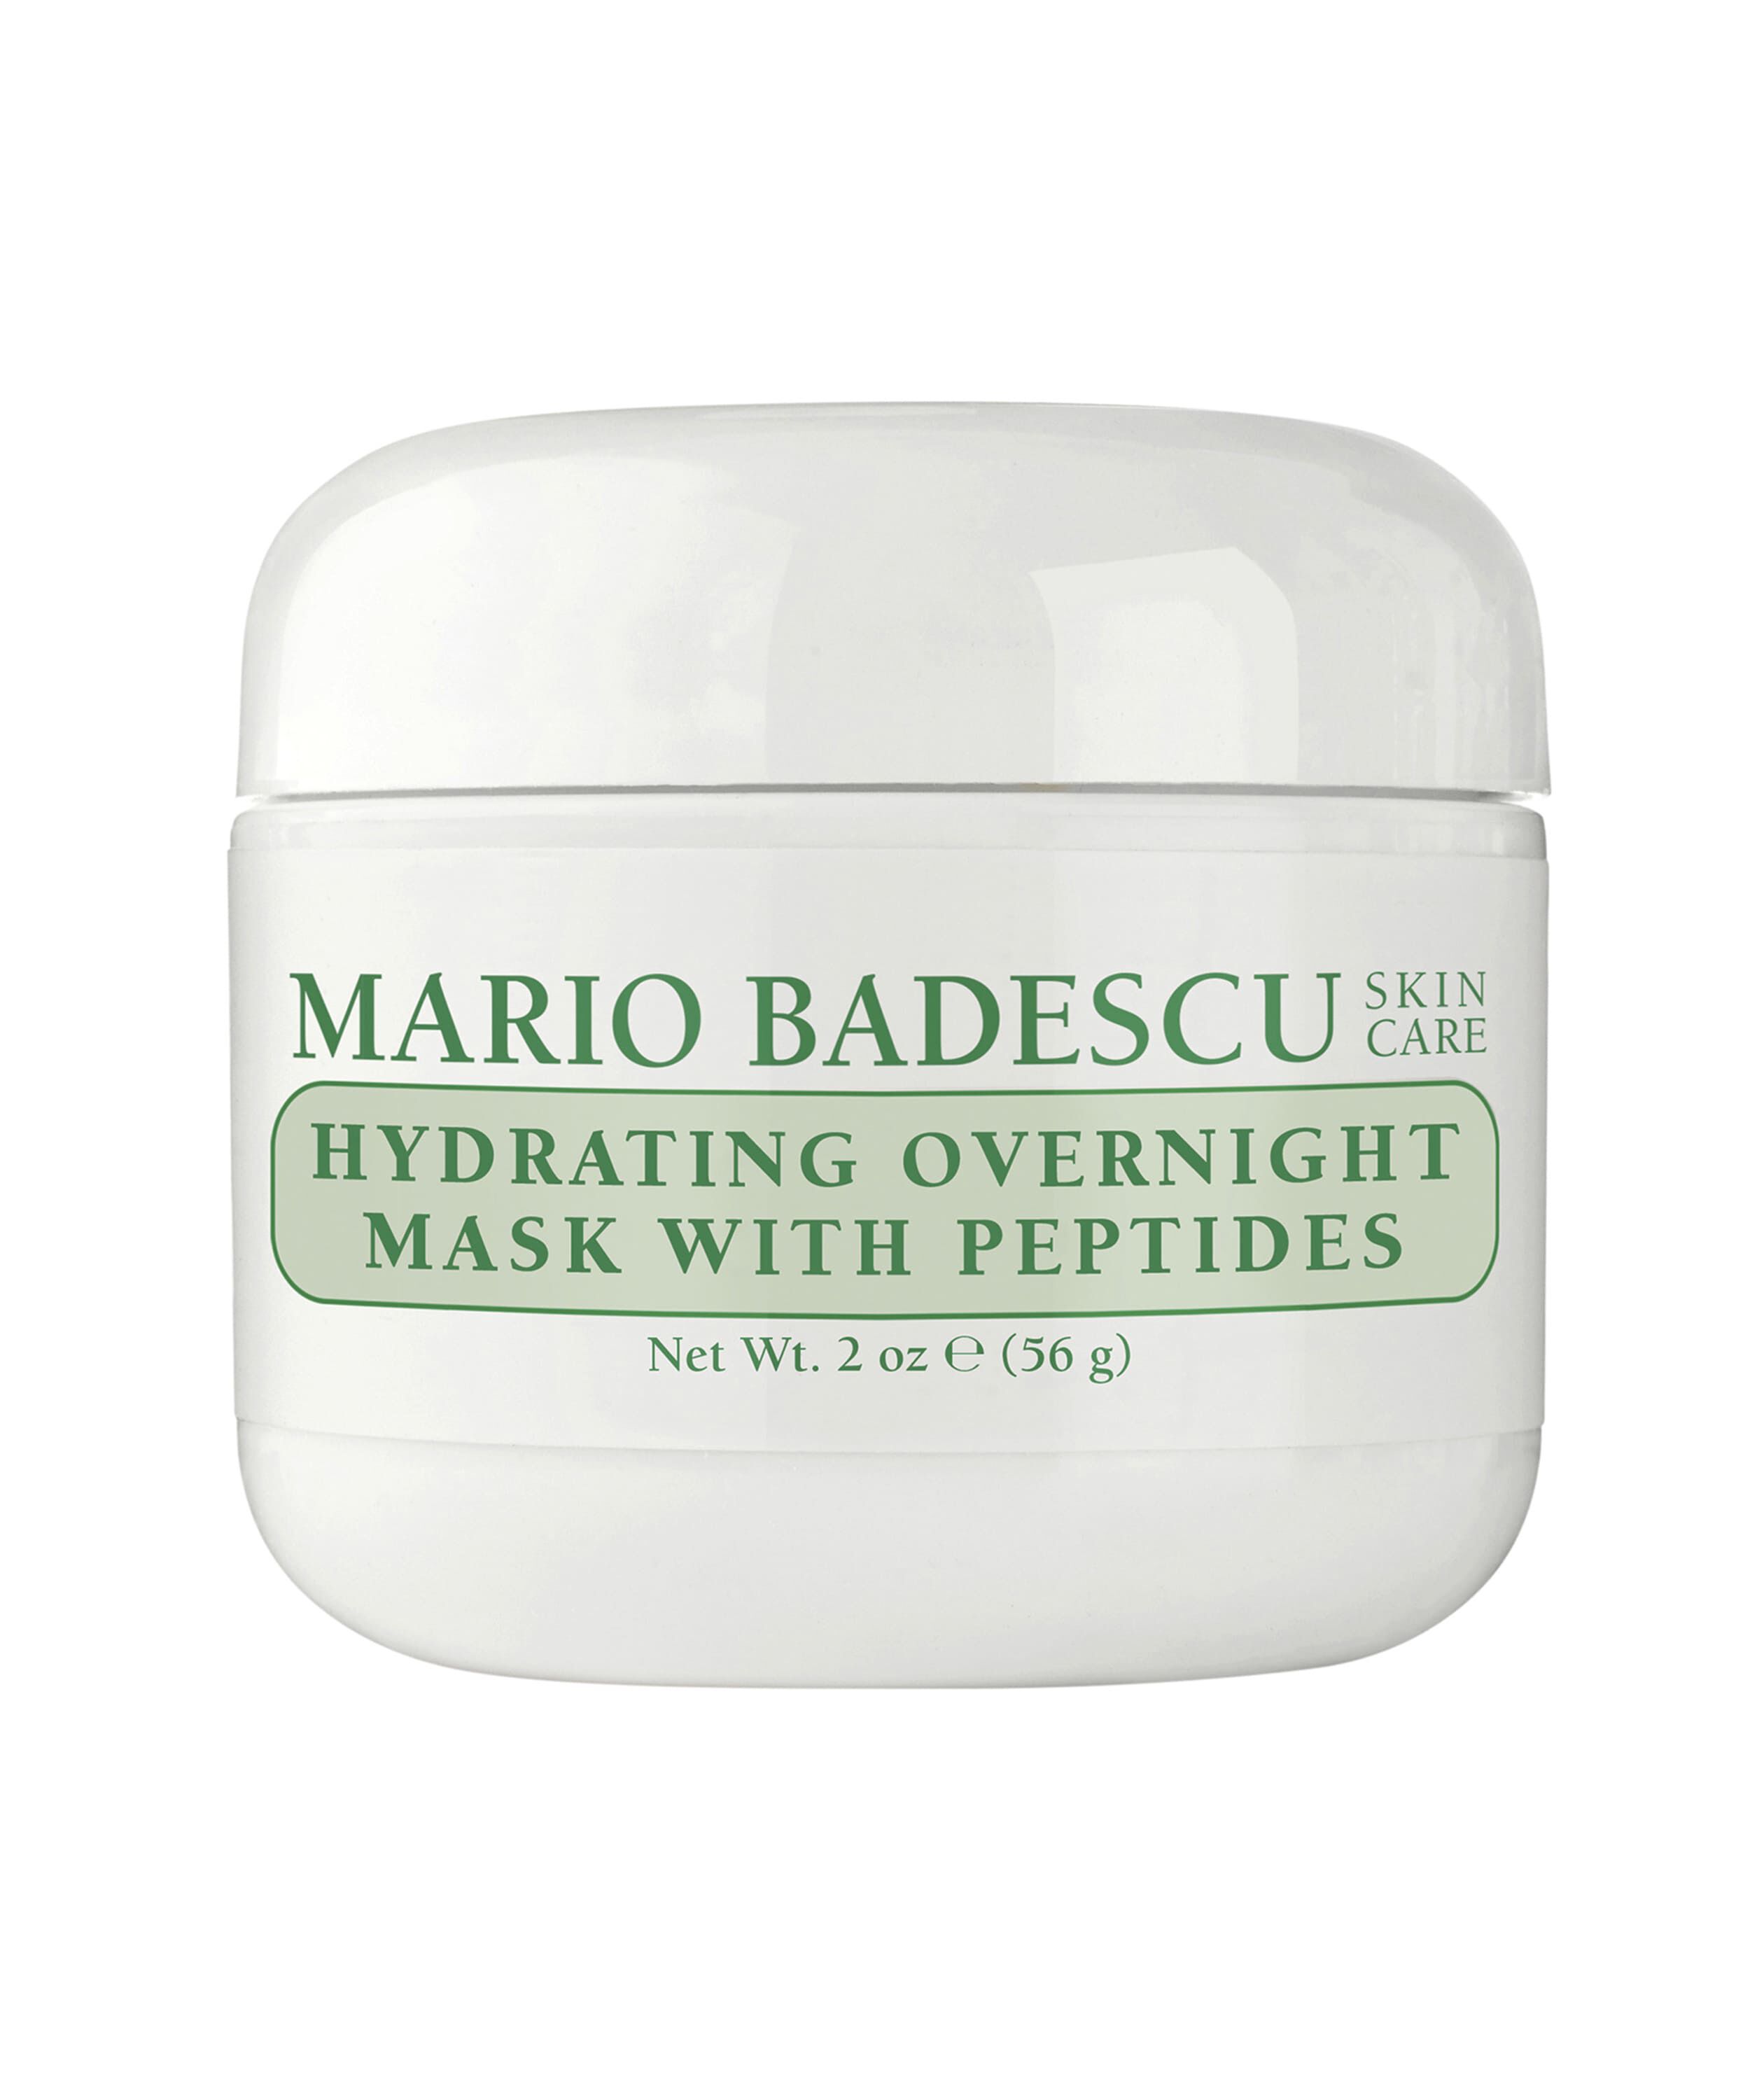 Увлажняющая антивозрастная маска для лица на ночь Mario Badescu, 56 гр маска для лица витэкс маска для лица увлажняющая гидрогелевая ночная несмываемая happy time